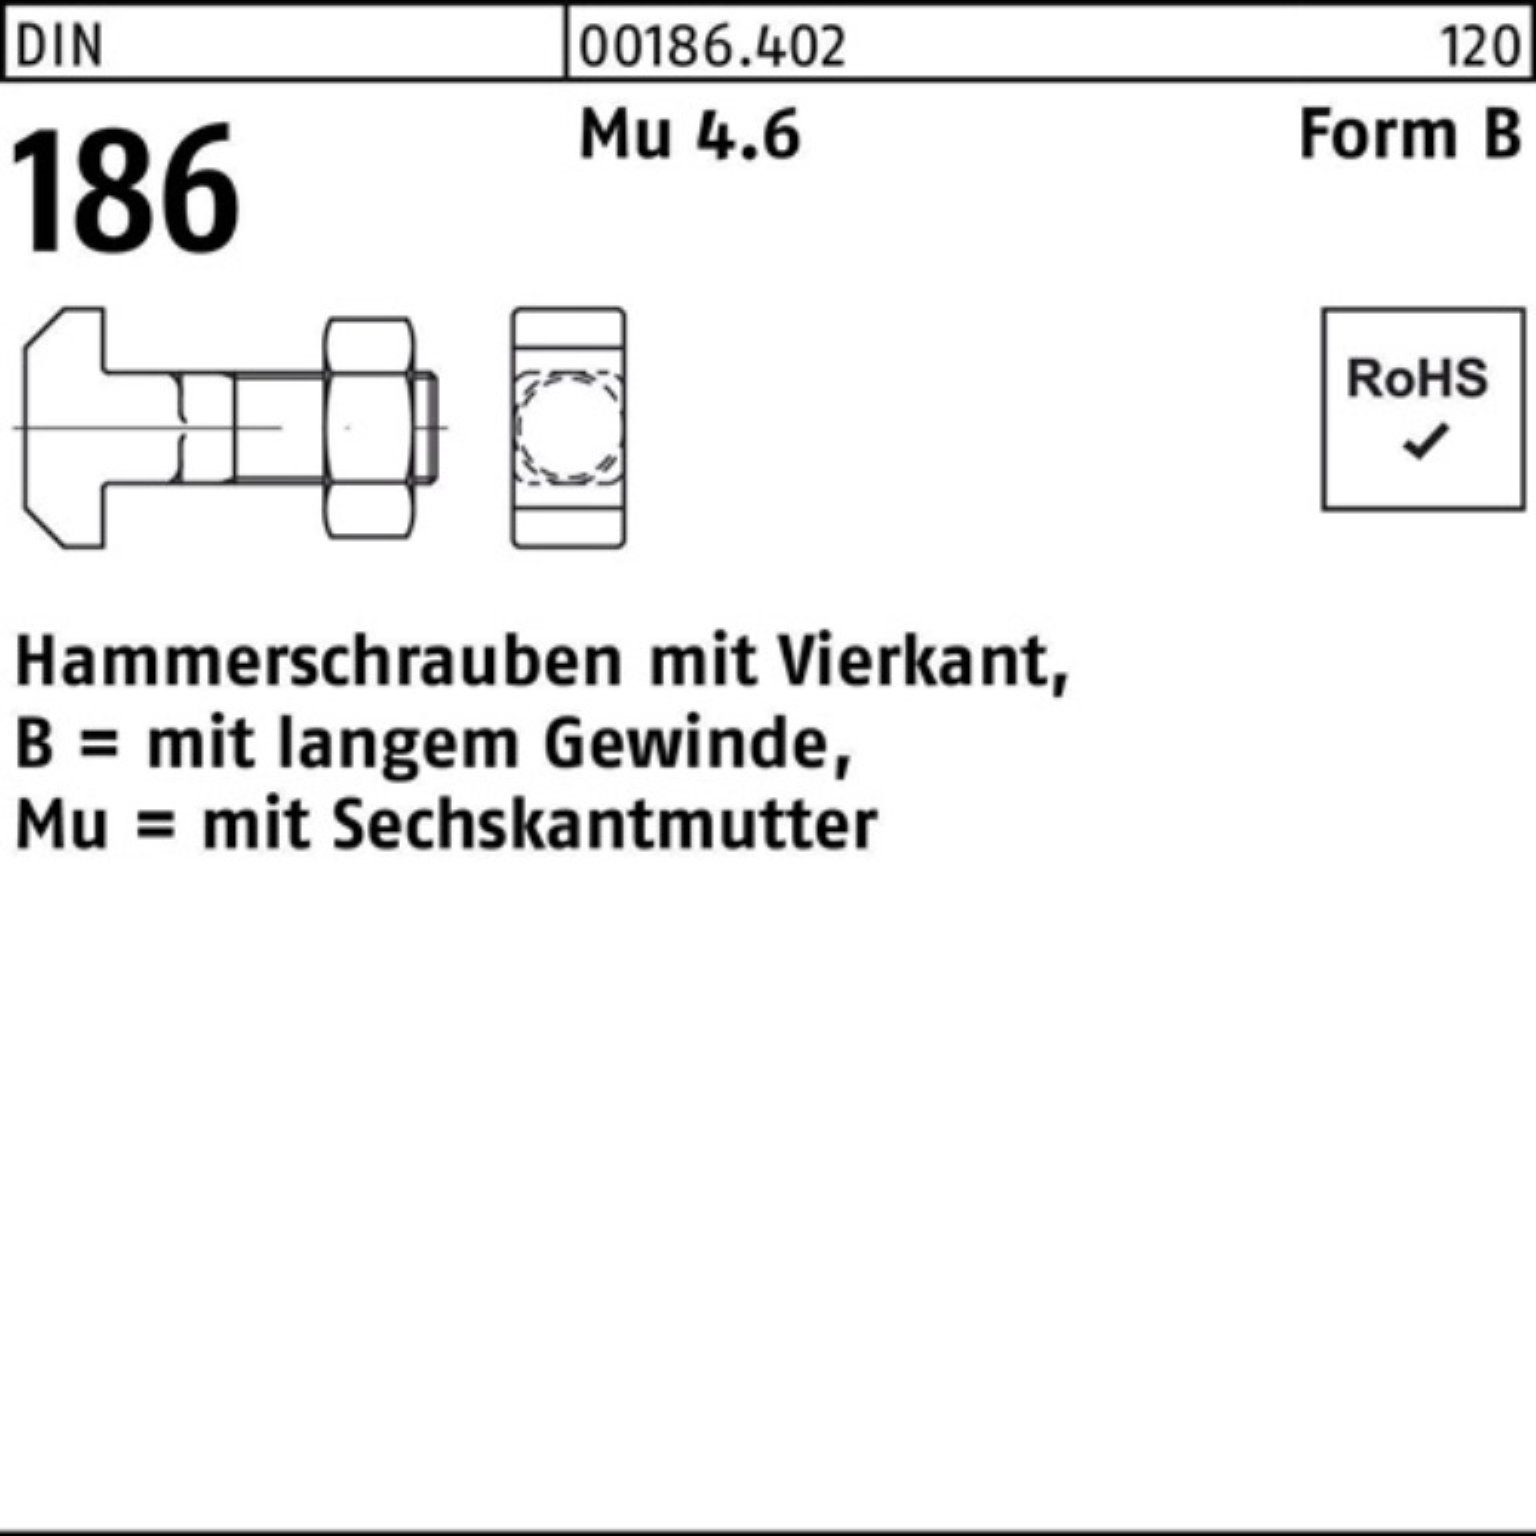 Reyher Schraube 100er Pack Hammerschraube DIN 186 FormB Vierkant 6-ktmutter BM 20x 120